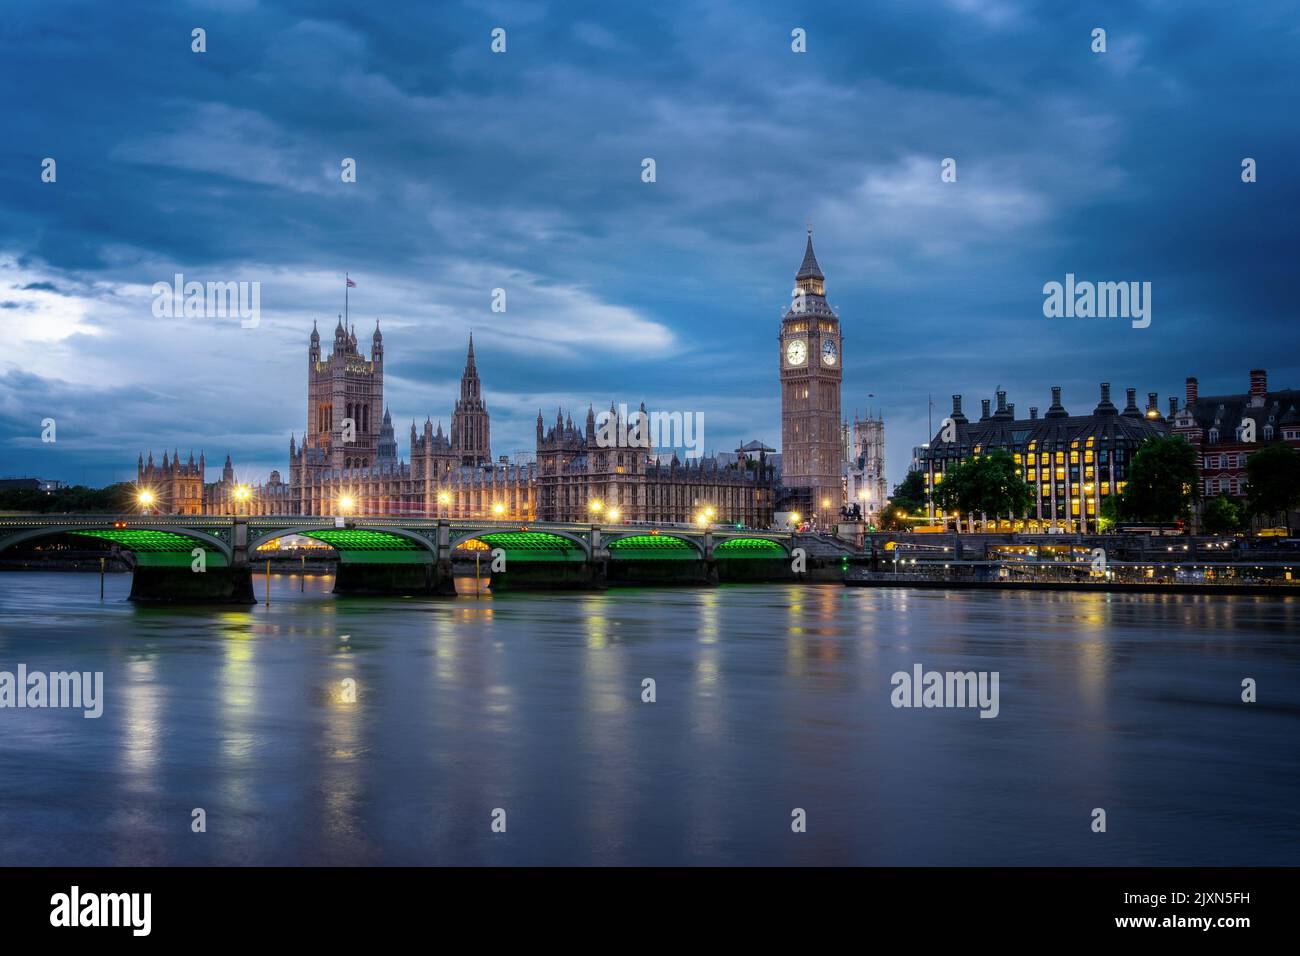 Vista del palacio de Westminster y el puente sobre el río Támesis con el Big Ben iluminado por la noche en Londres, Reino Unido Foto de stock